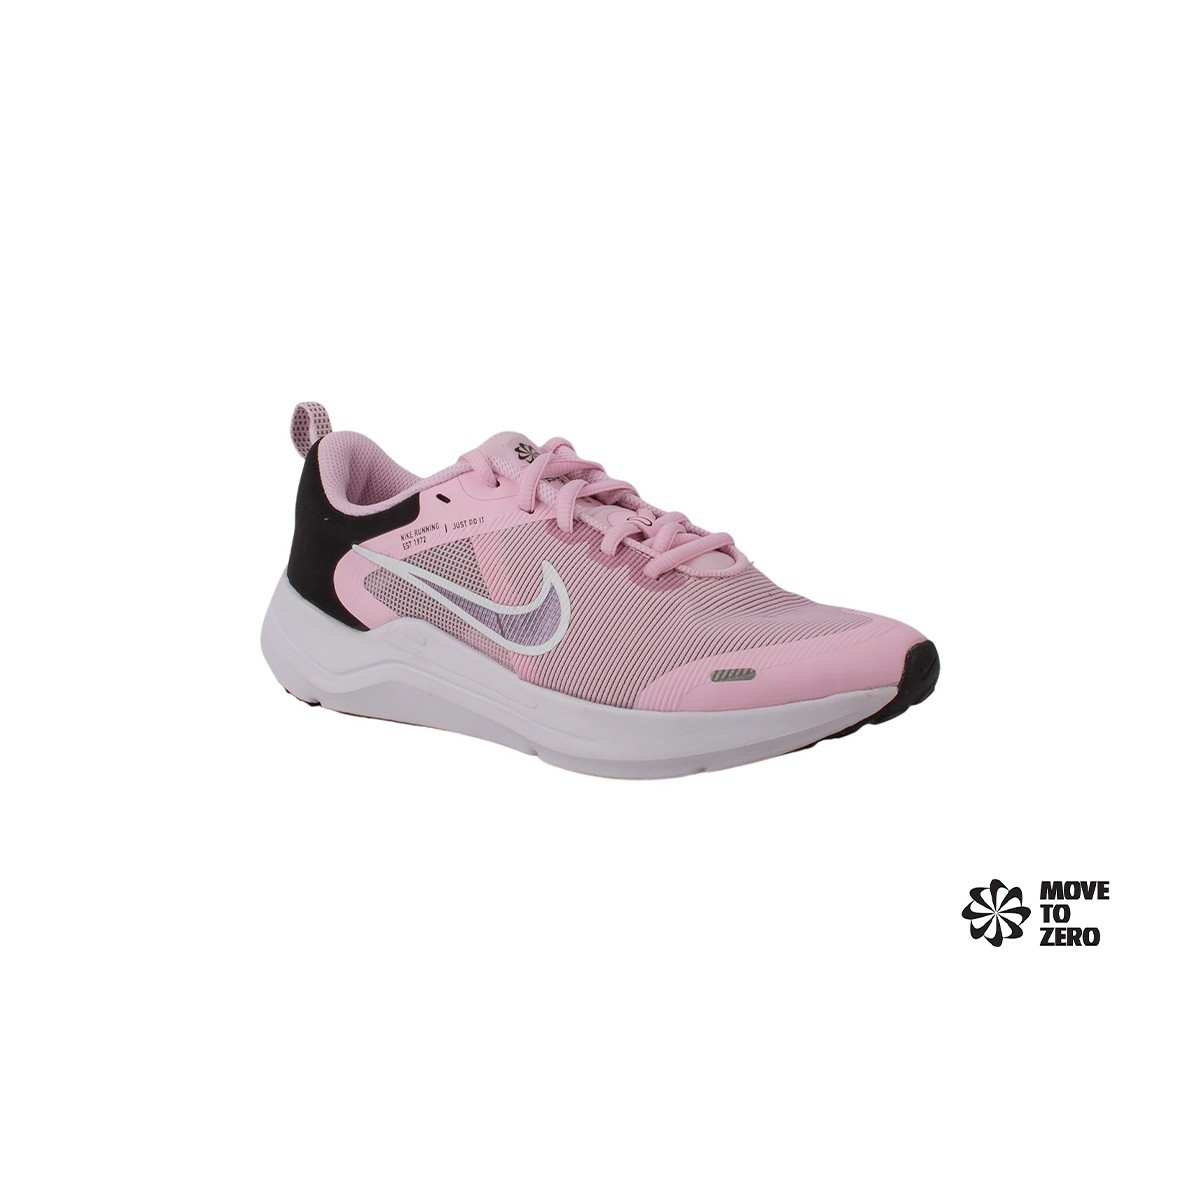 Laboratorio demandante innovación Nike Zapatillas Nike Downshifter 12 Pink Foam Rosa Niño